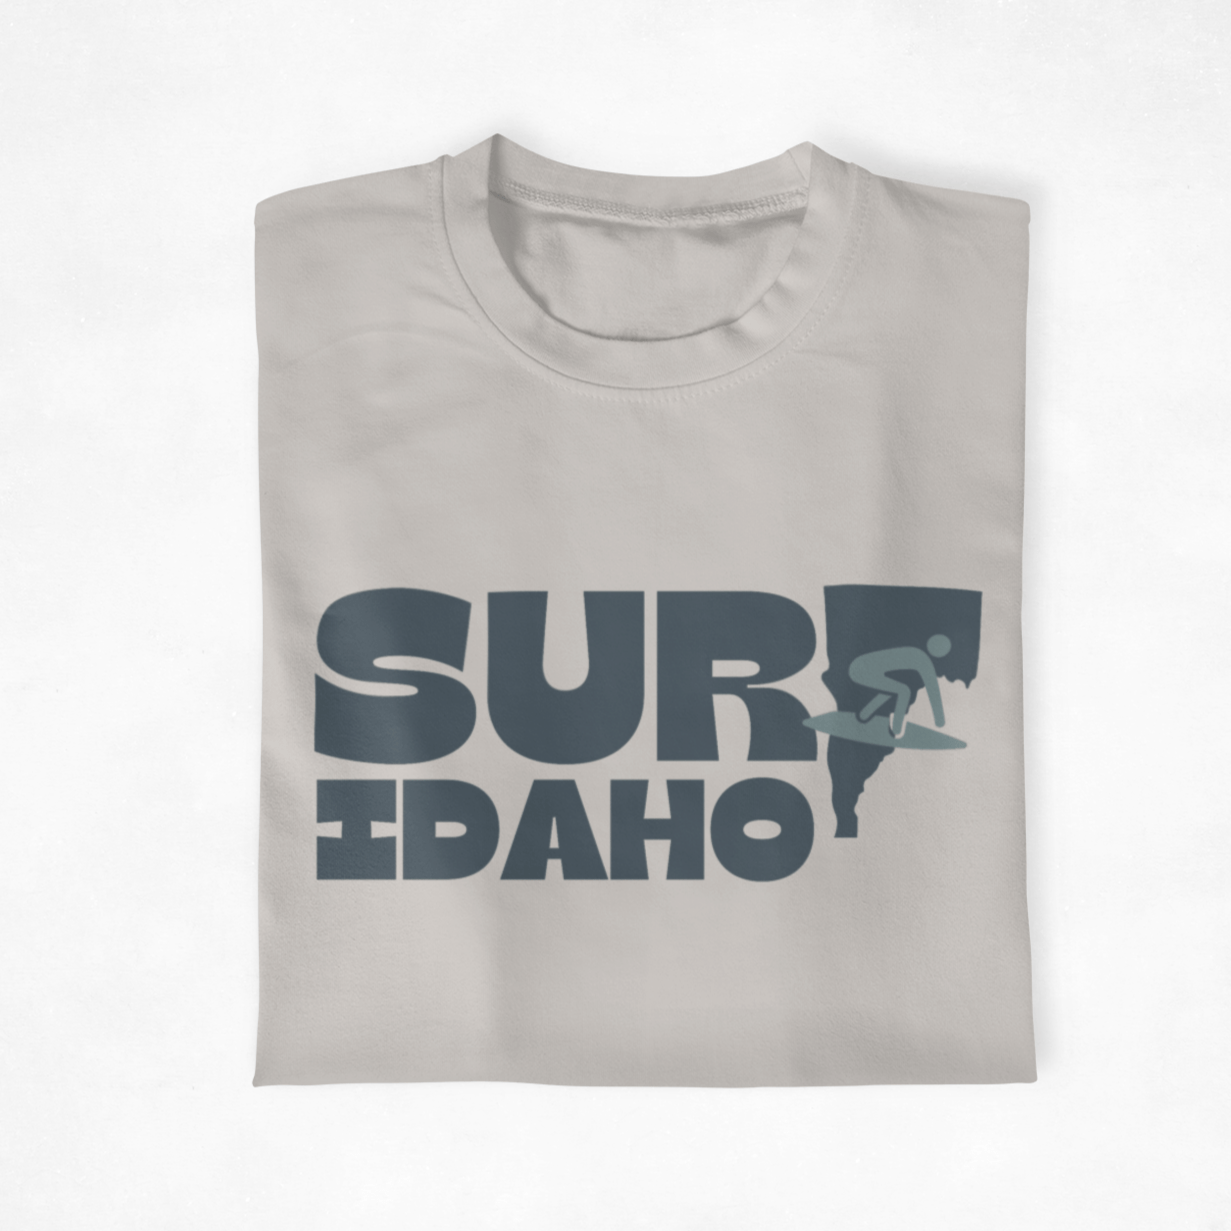 208 Supply Co tees Small / Cool Grey Surf Idaho Unisex Tee